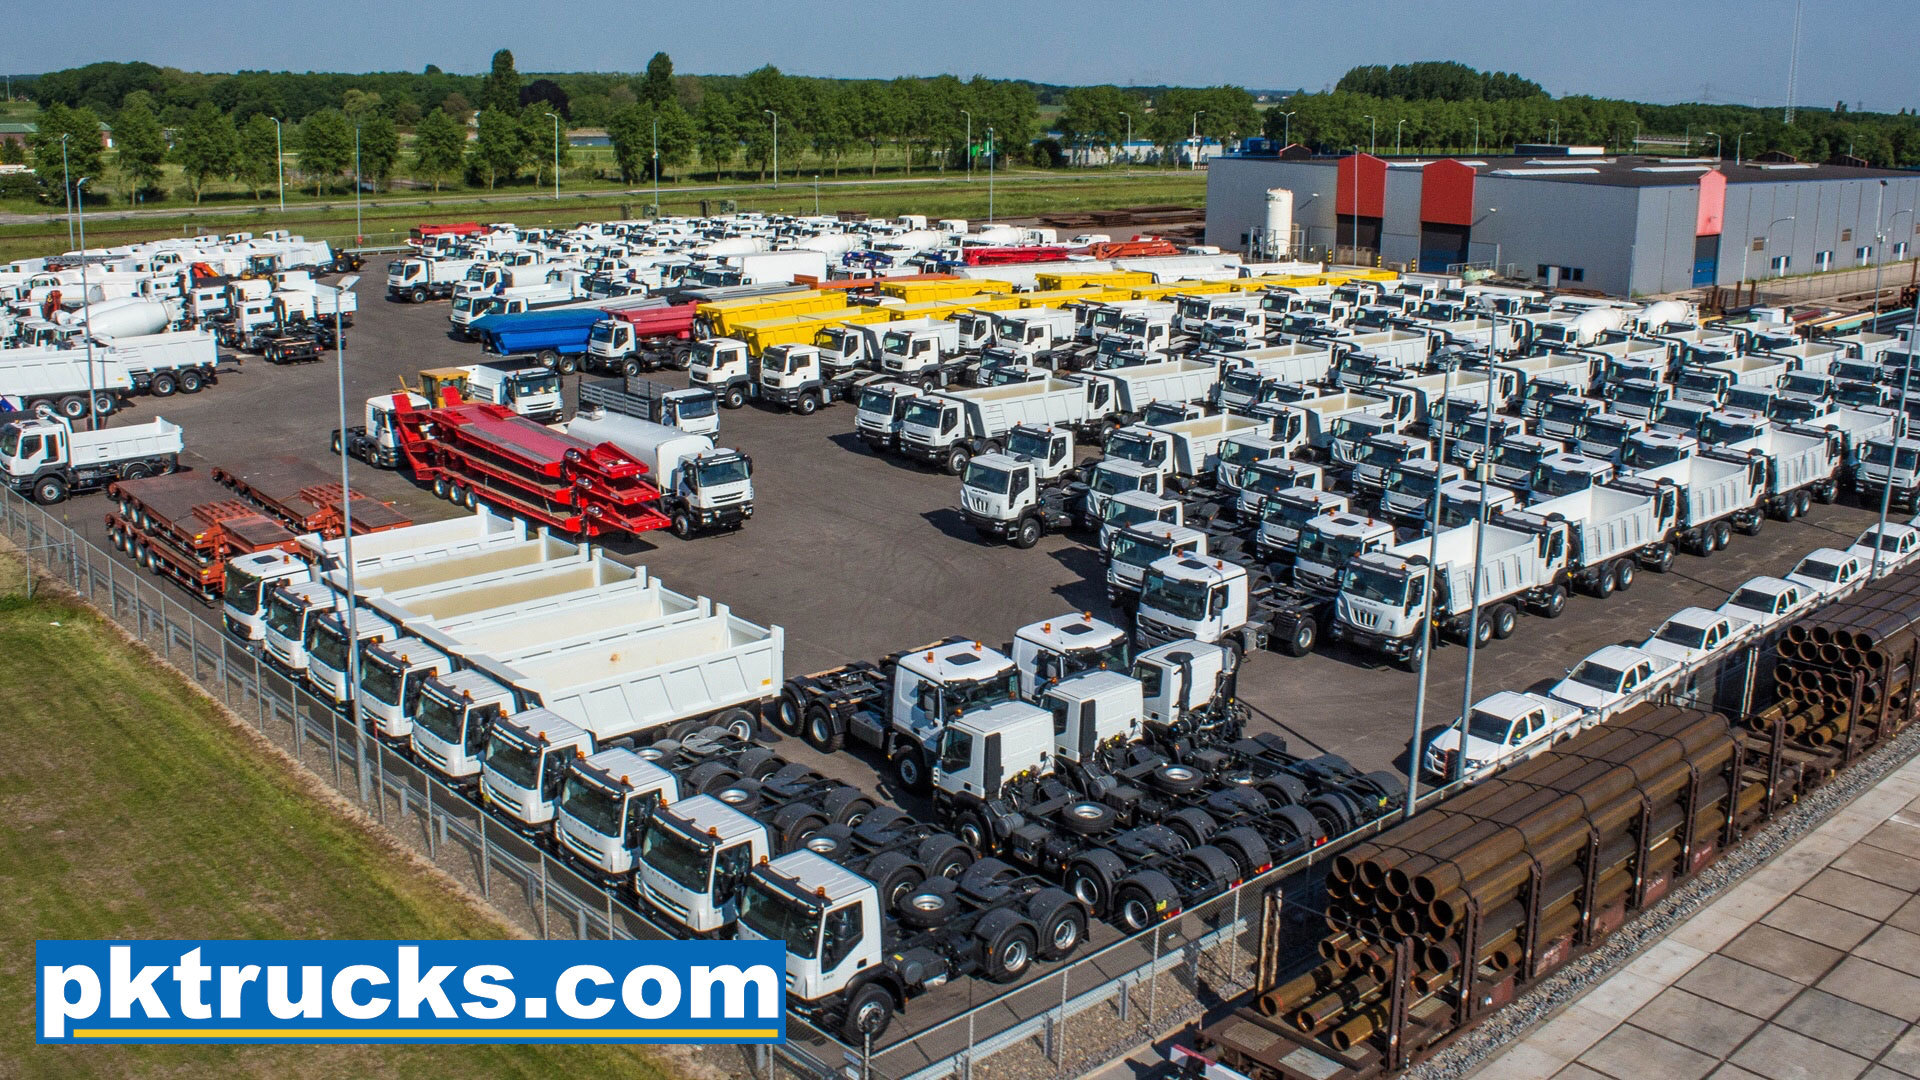 Pk trucks holland undefined: φωτογραφία 3